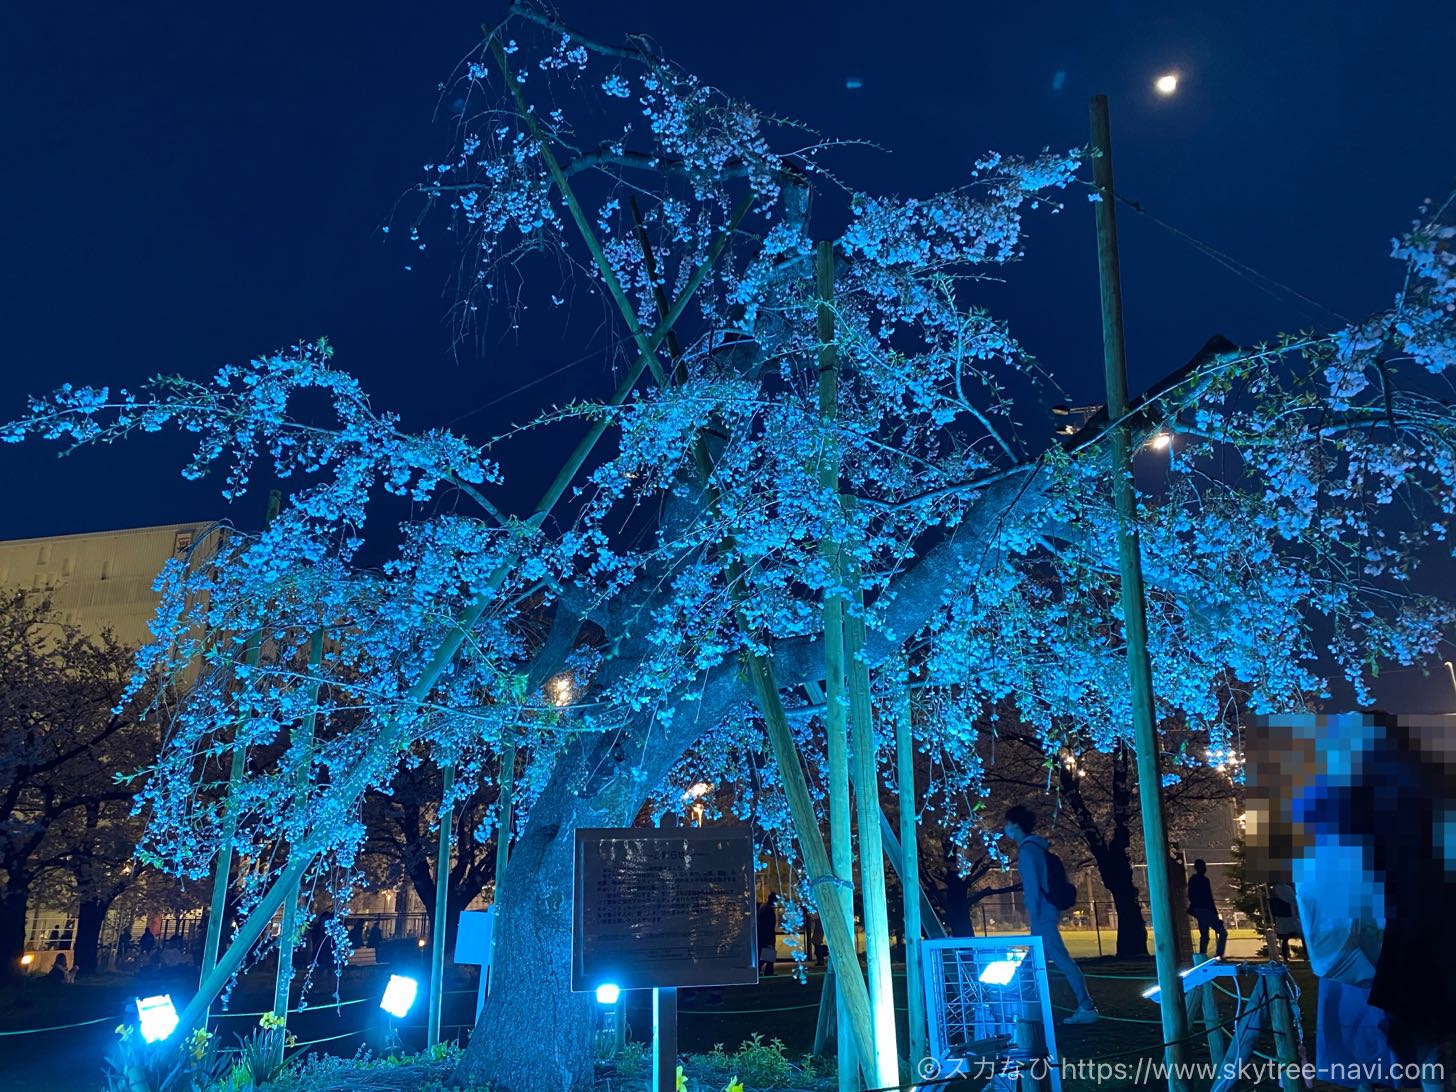 錦糸公園の桜ライトアップ